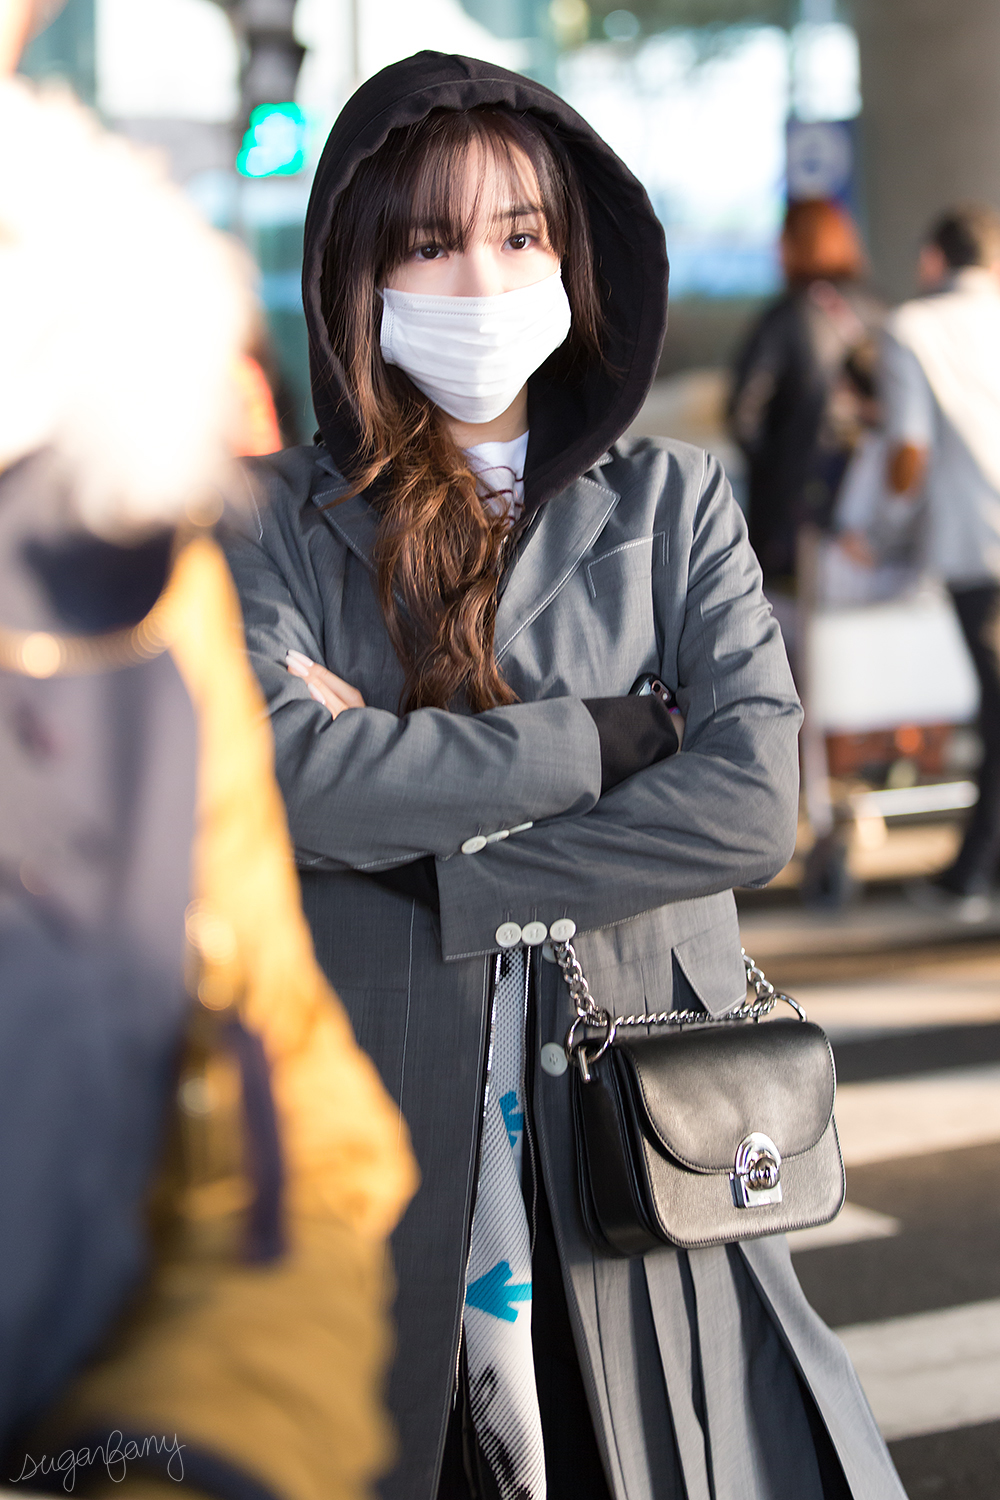 [PIC][20-02-2016]Tiffany trở về Hàn Quốc vào sáng nay 25140309835_c4867c475b_o